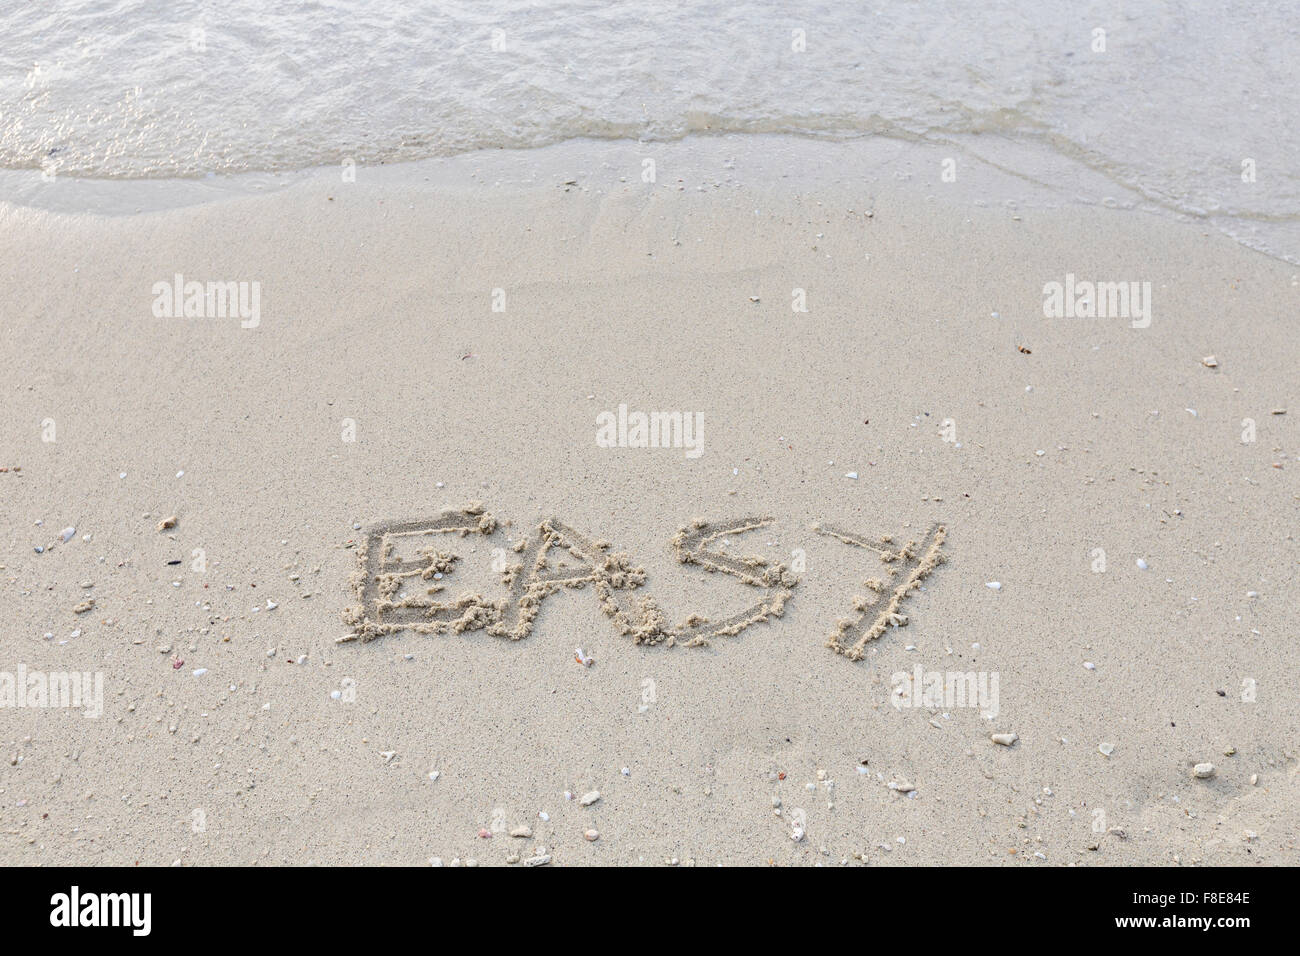 Facile écrit dans le sable humide Banque D'Images